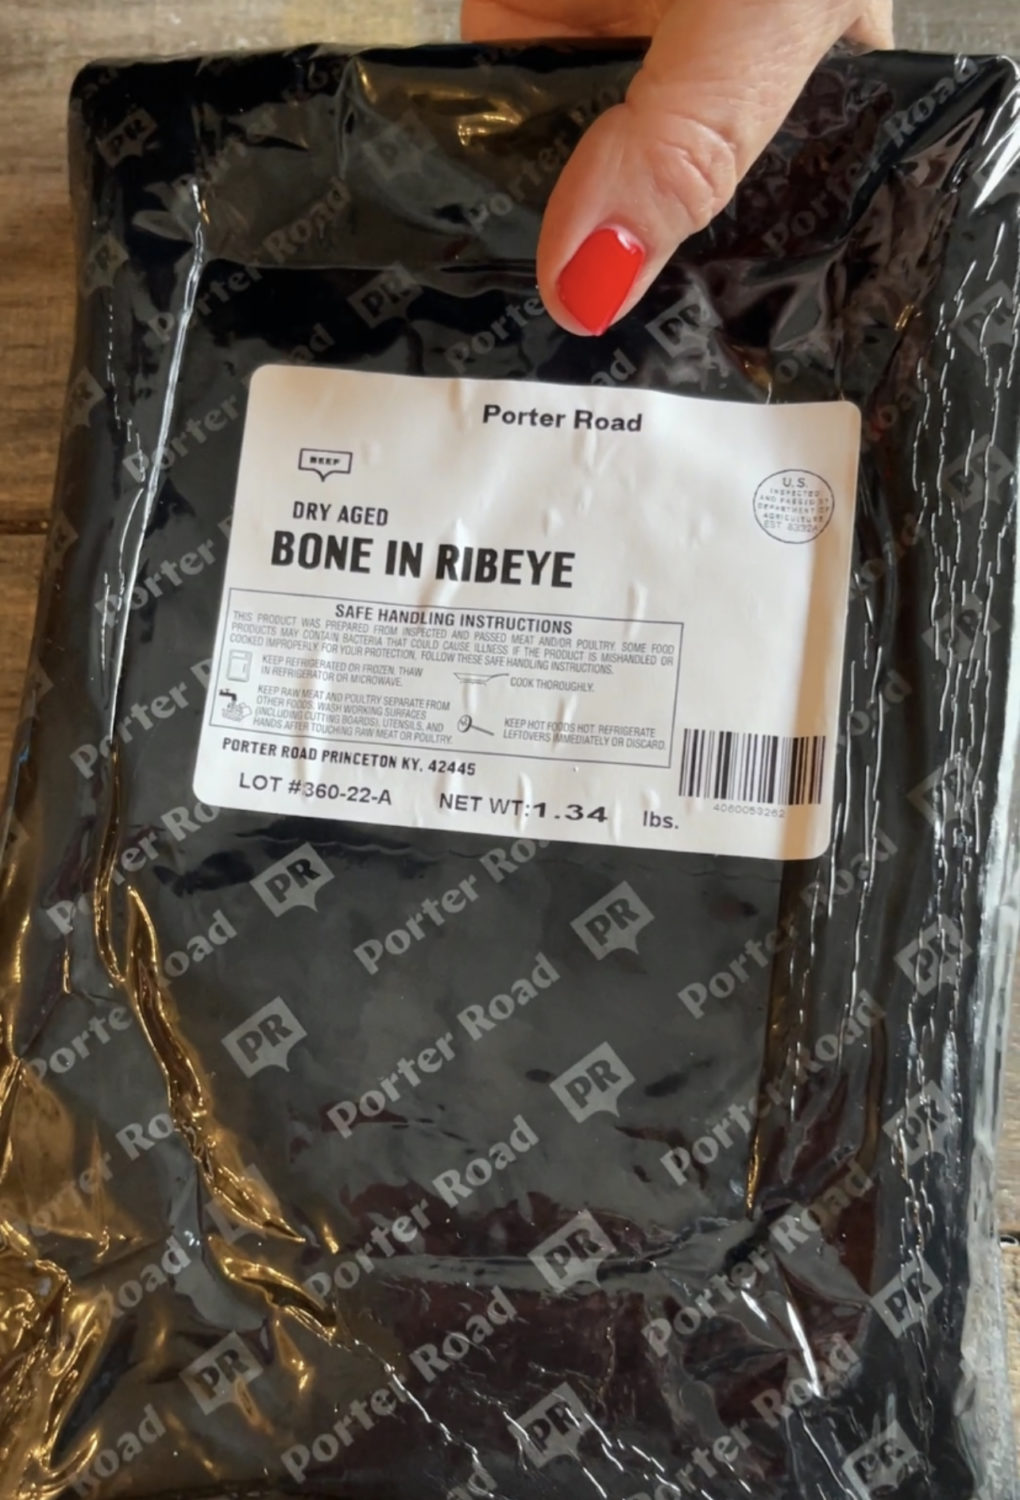 porter road ribeye in packaging